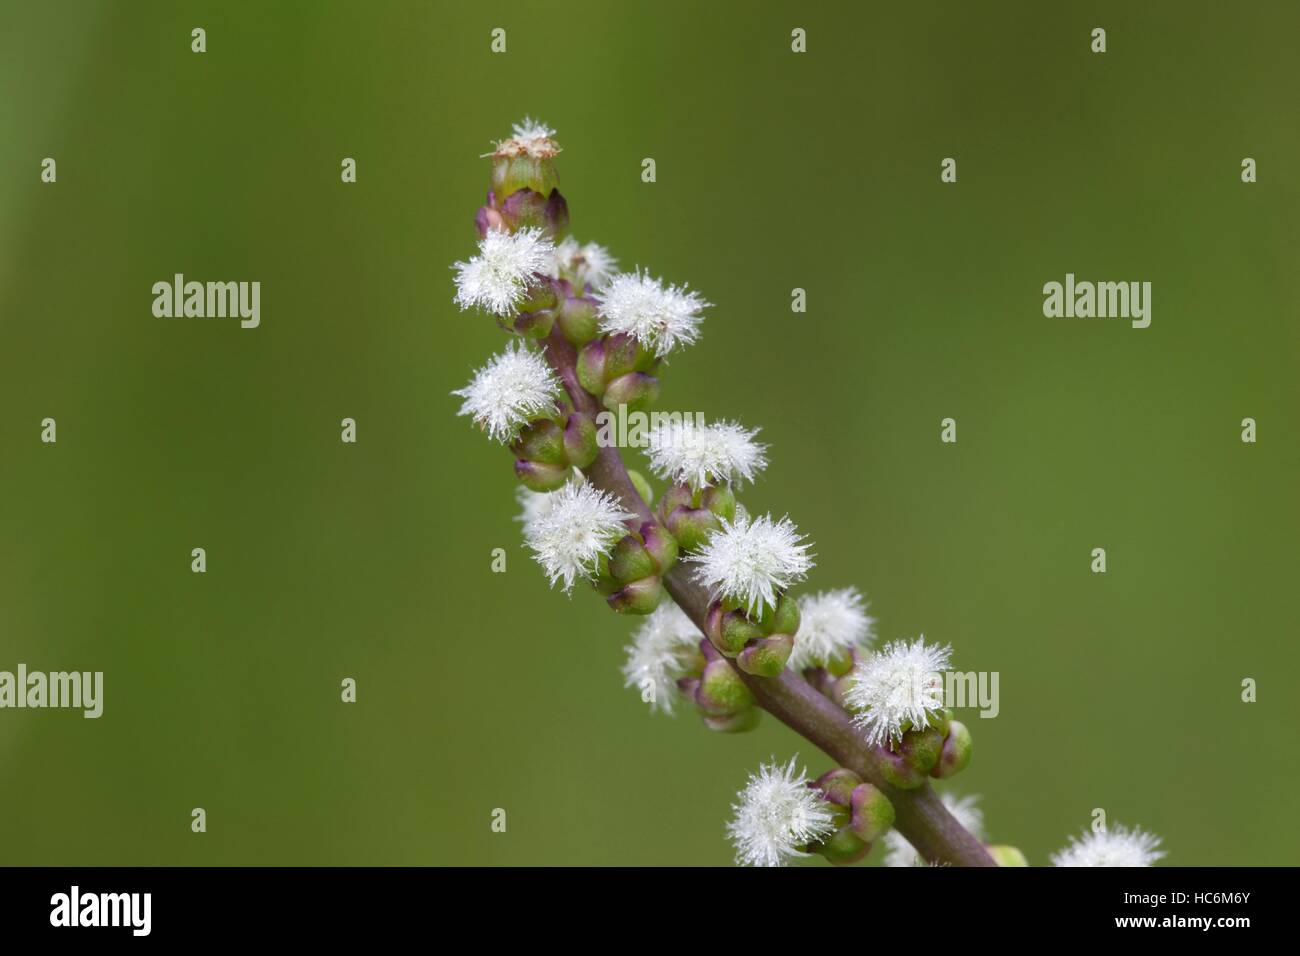 Common arrowgrass, Triglochin maritima Stock Photo